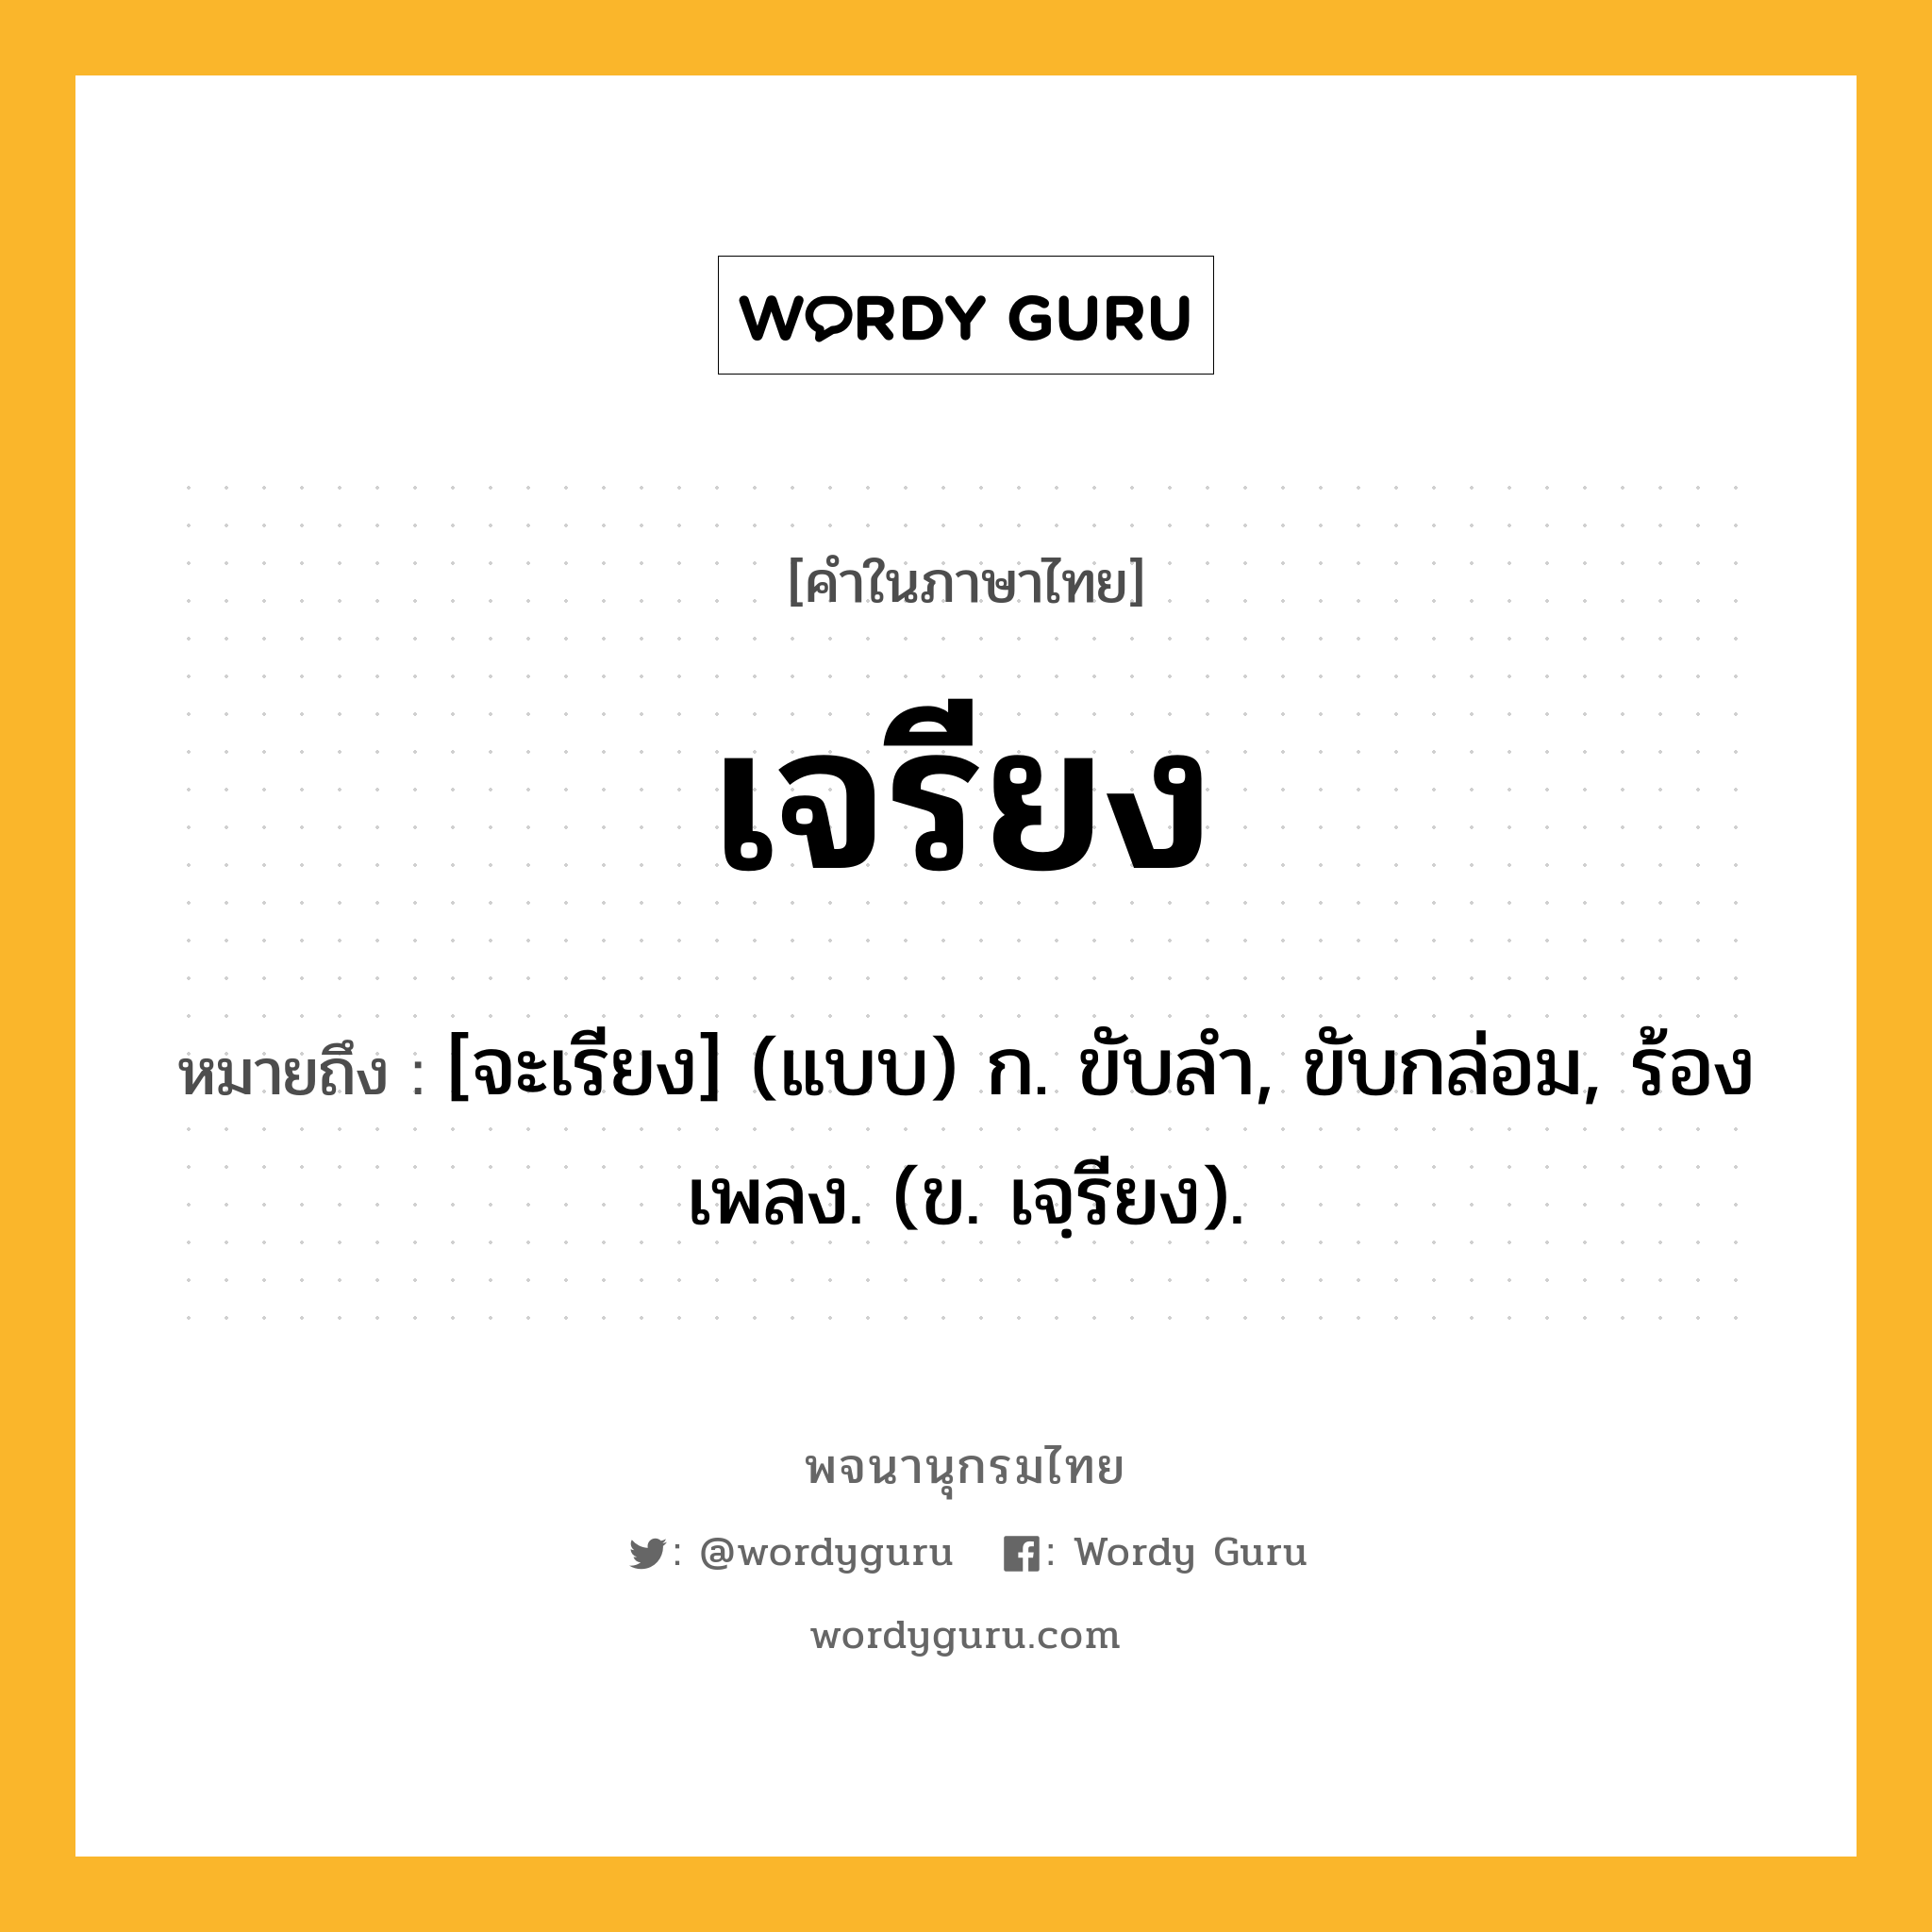 เจรียง ความหมาย หมายถึงอะไร?, คำในภาษาไทย เจรียง หมายถึง [จะเรียง] (แบบ) ก. ขับลํา, ขับกล่อม, ร้องเพลง. (ข. เจฺรียง).